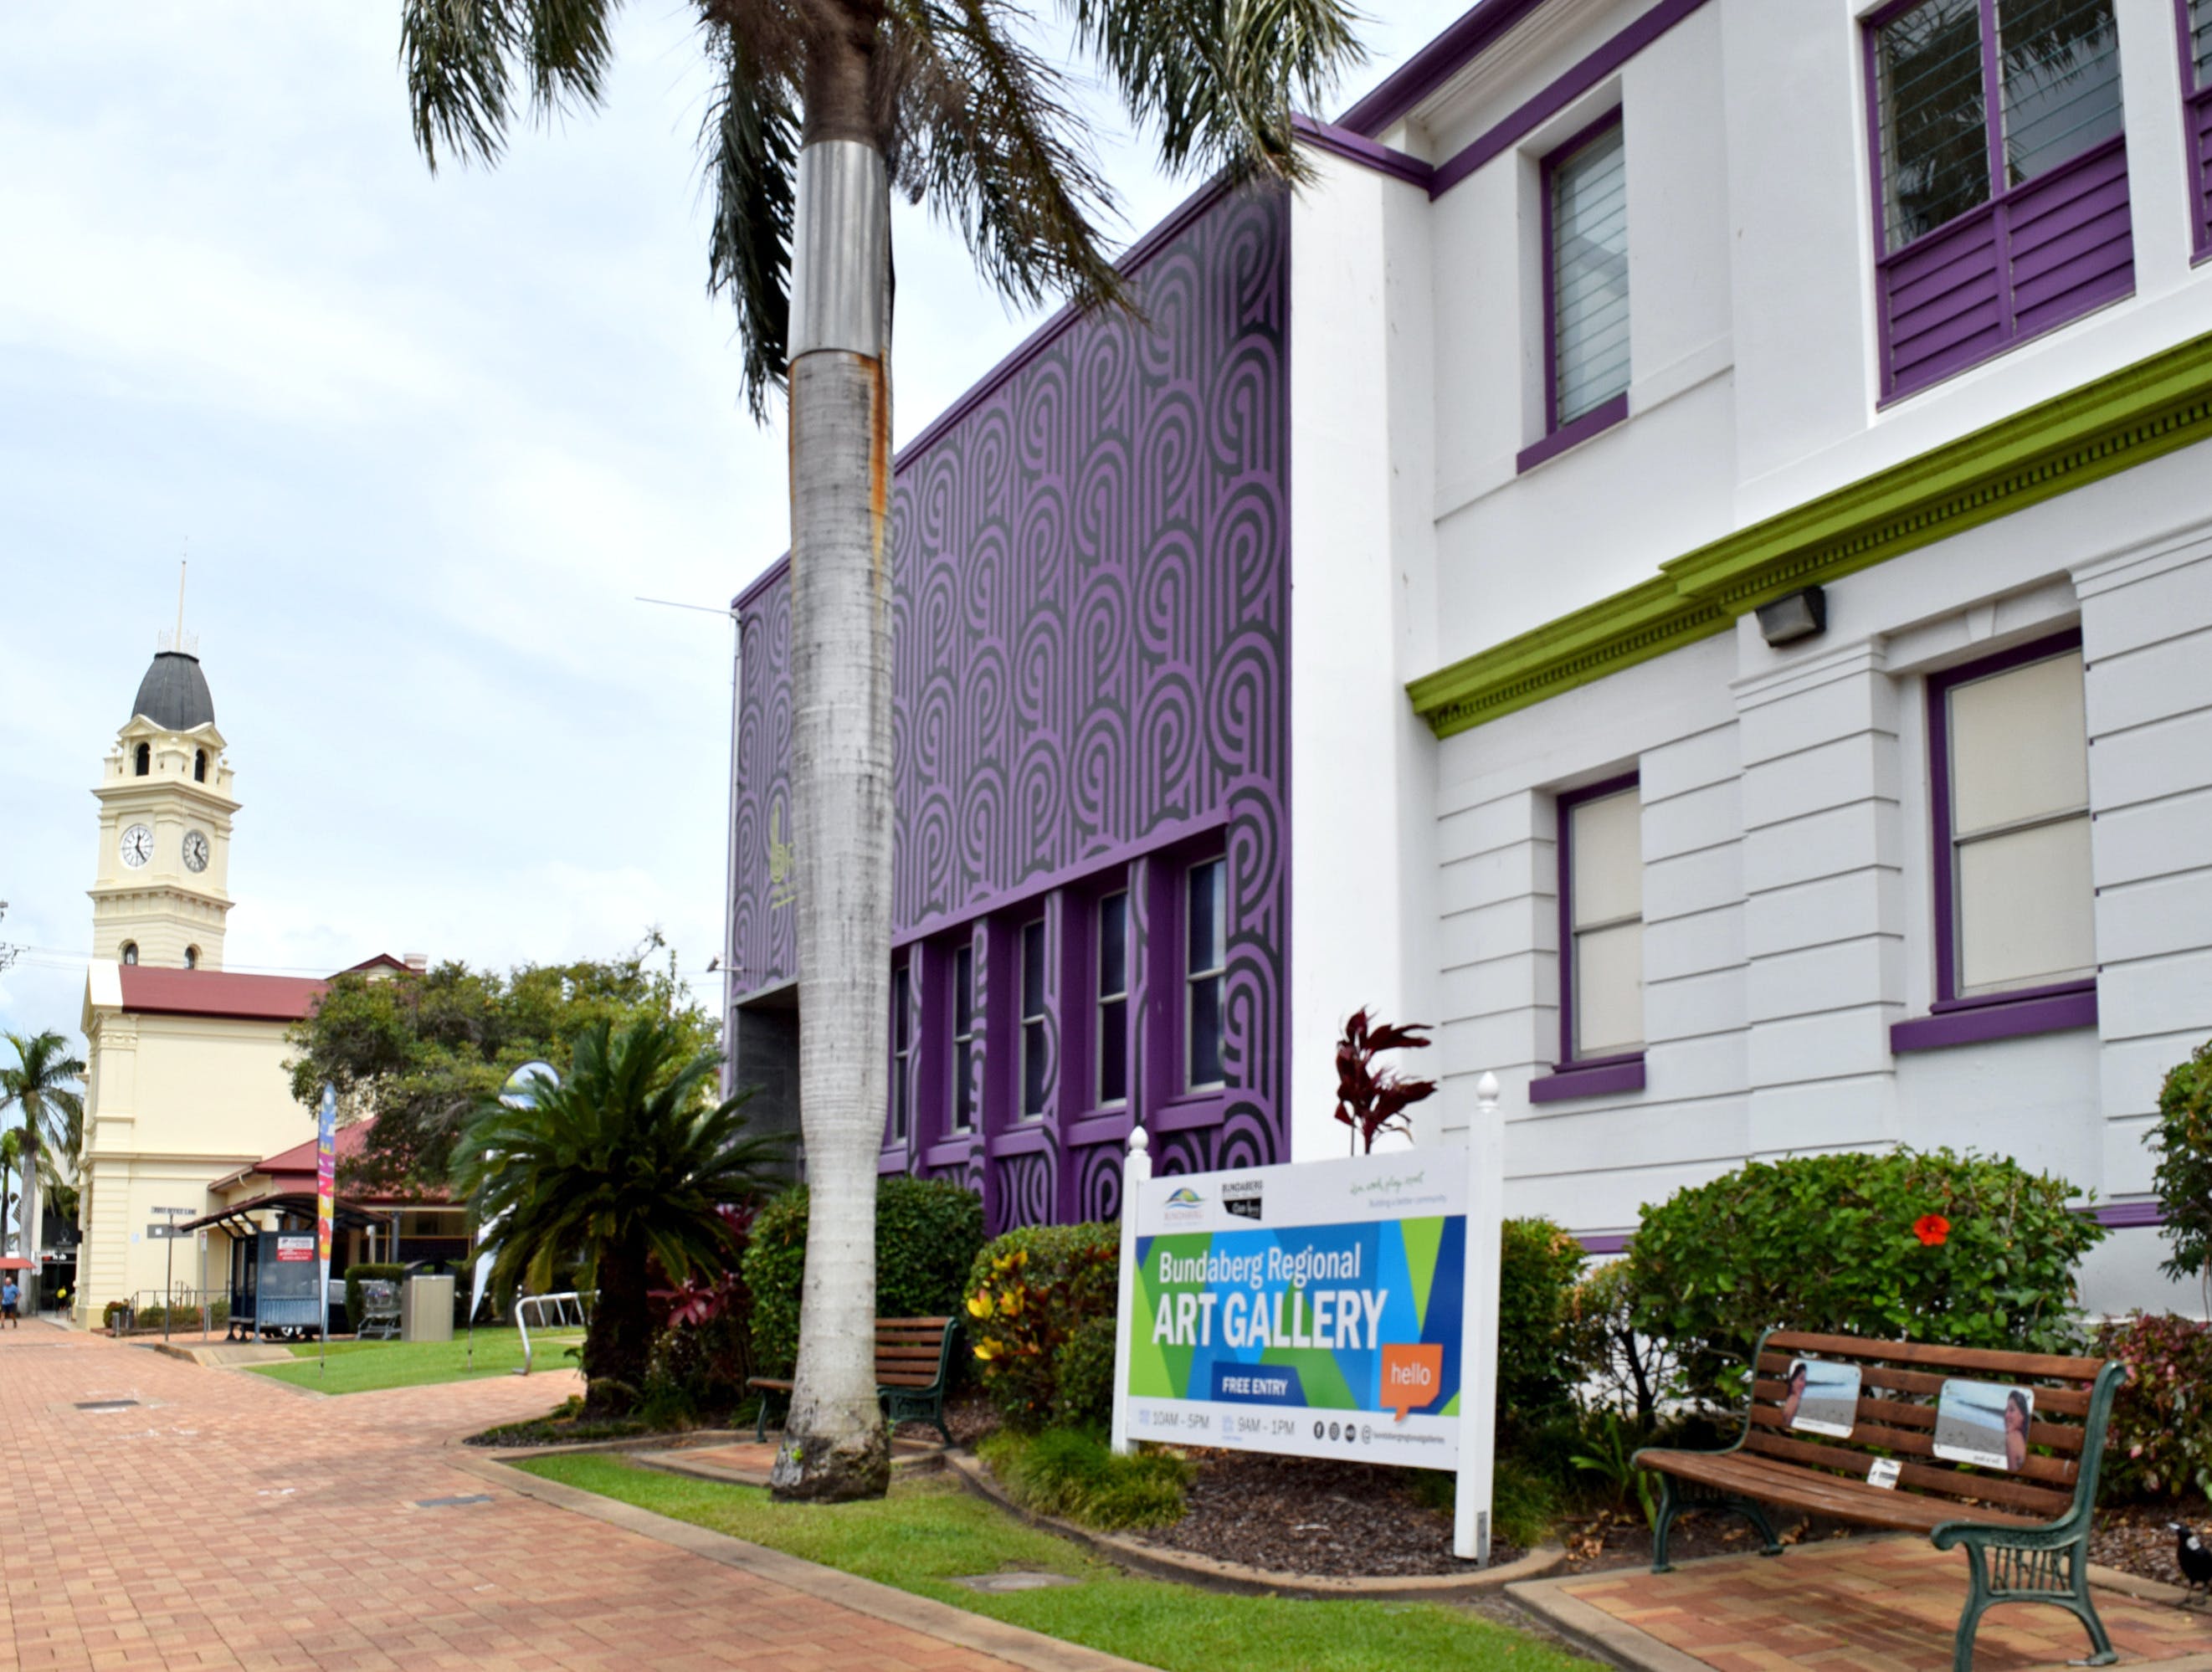 Bundaberg Regional Art Gallery - Accommodation Whitsundays